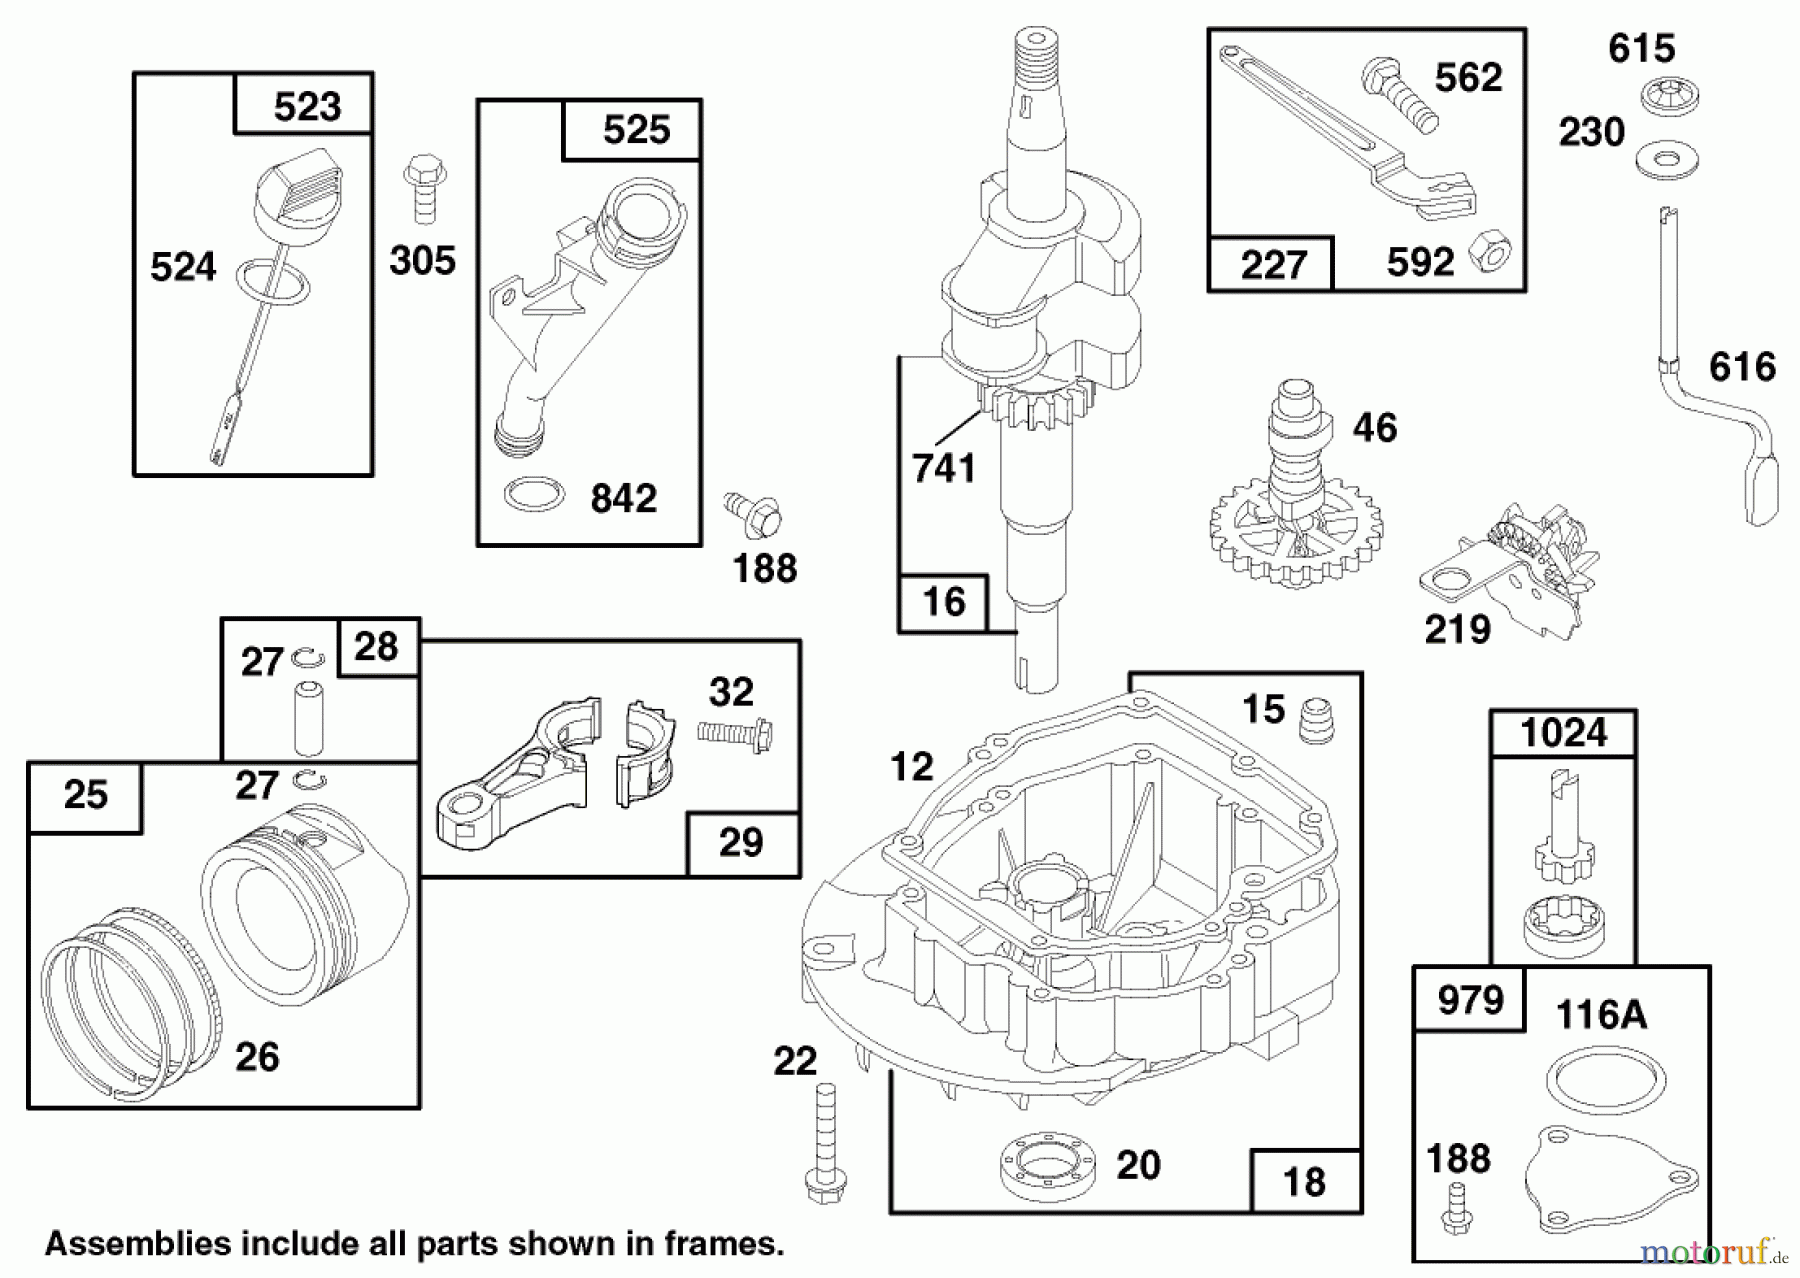  Toro Neu Mowers, Walk-Behind Seite 1 20483 - Toro Lawnmower, 1997 (790000001-799999999) ENGINE GTS 150 (MODEL NO. 20483)